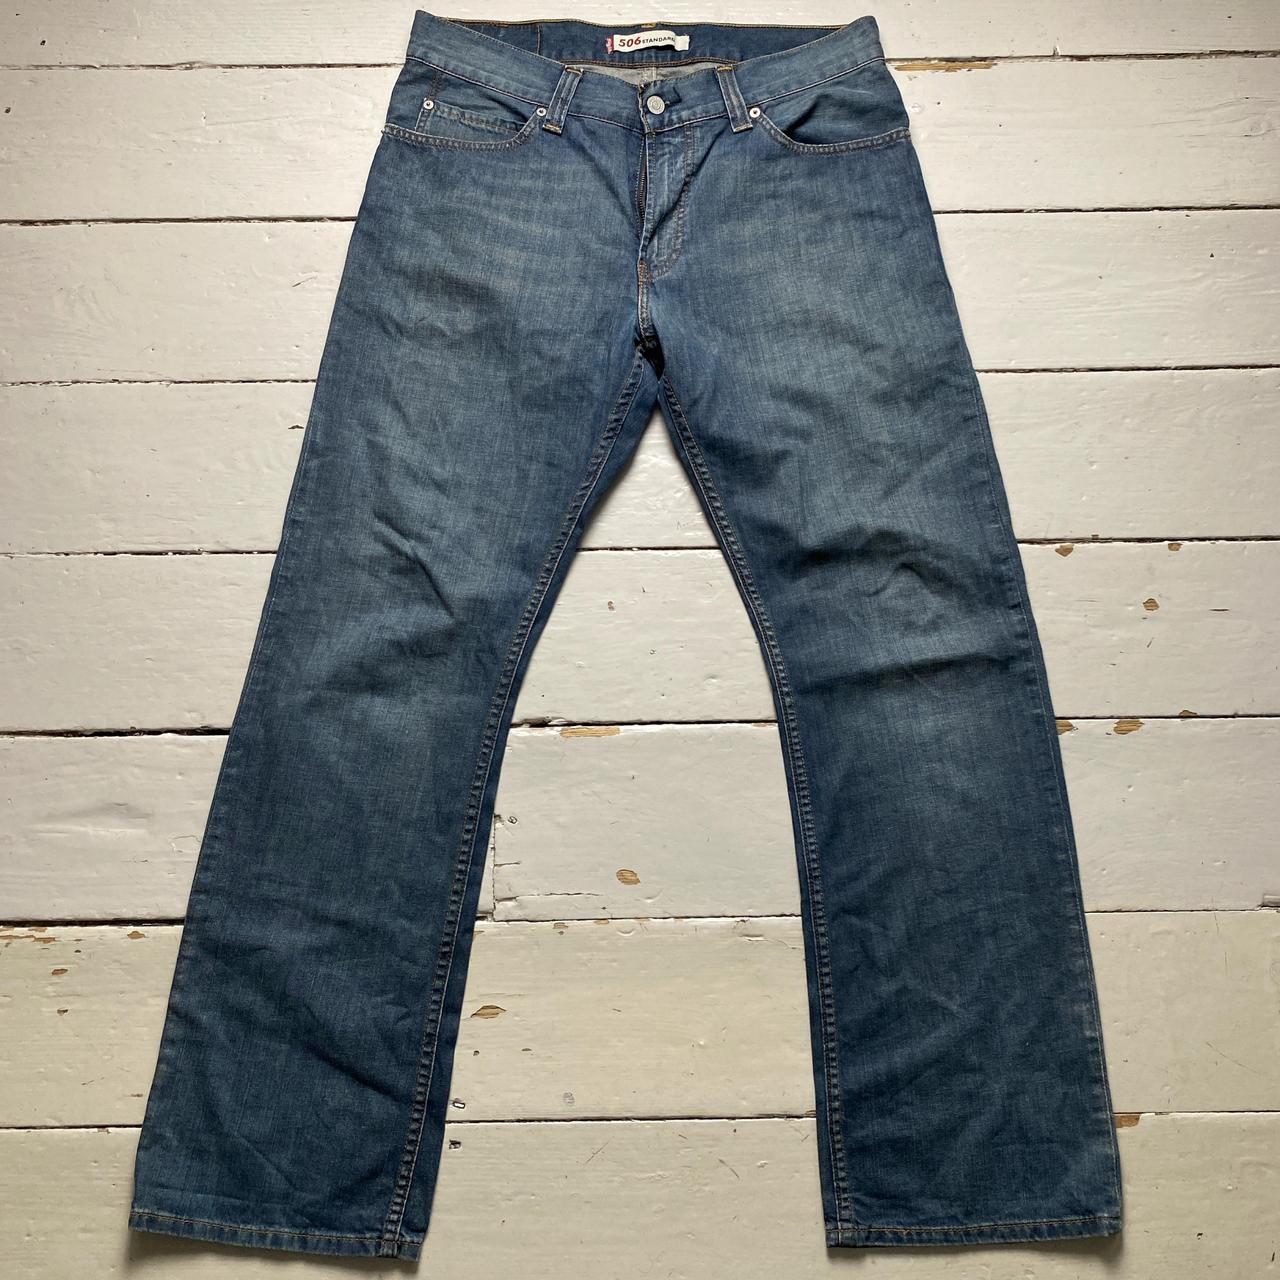 Levis 506 Vintage Blue Jeans